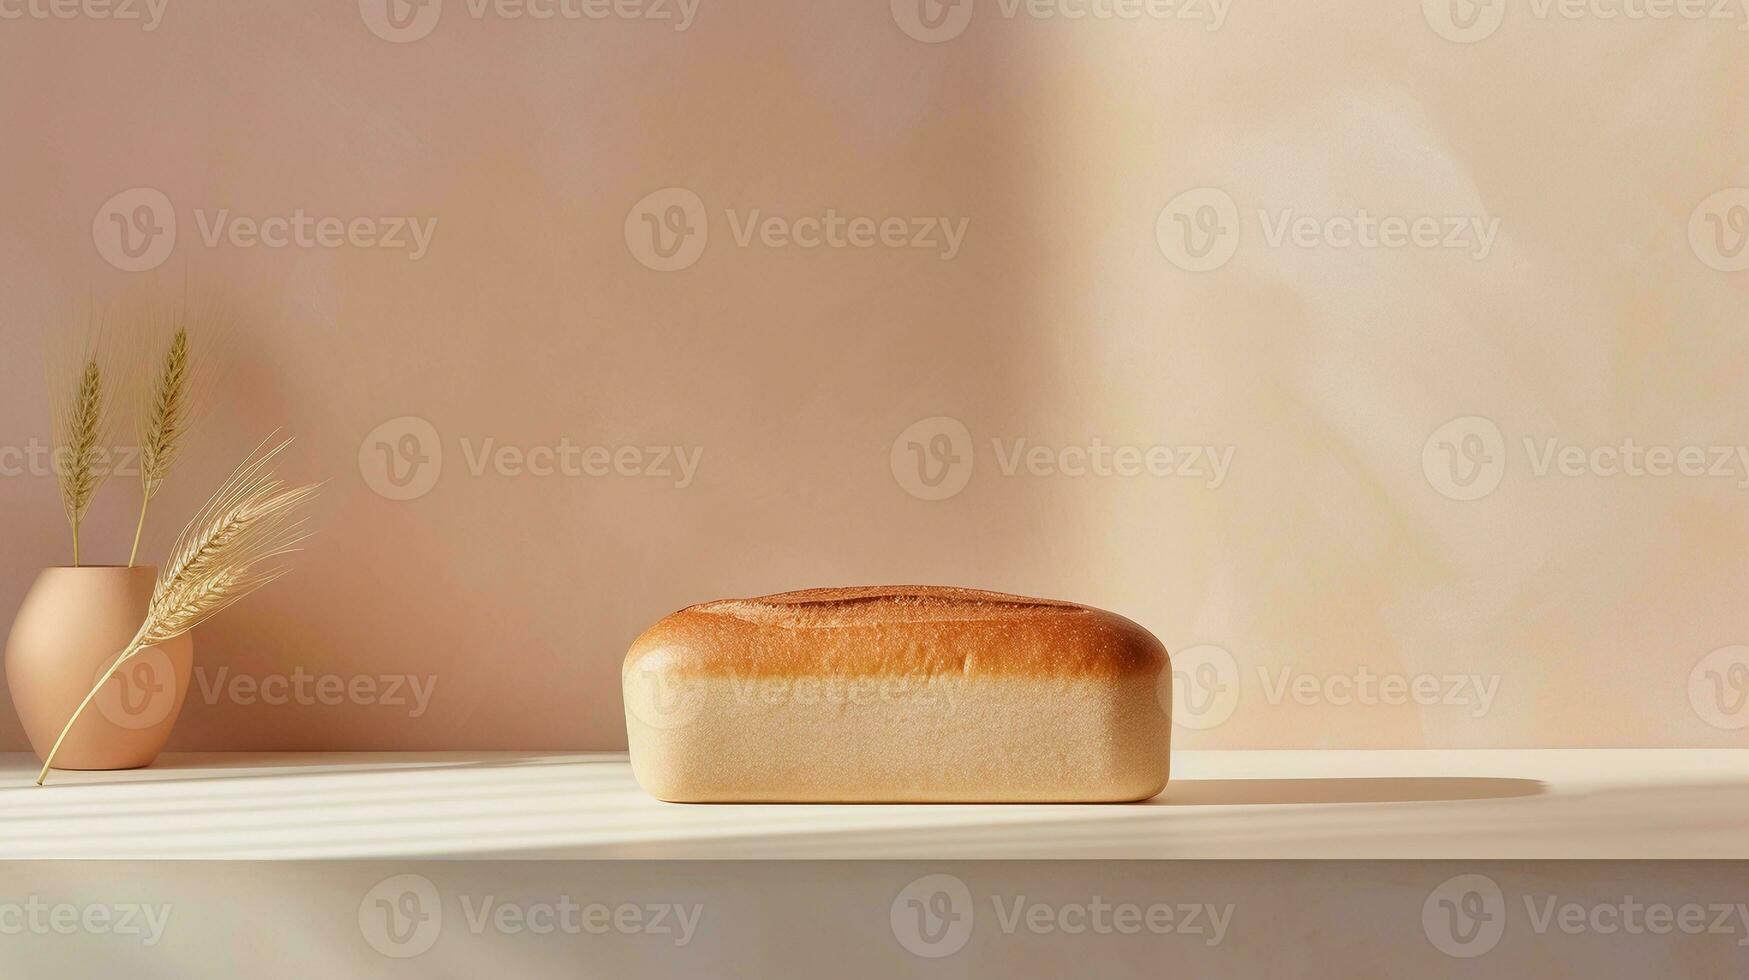 a artístico composição apresentando uma solteiro pão do pão Como a focal ponto contra uma suave pastel pano de fundo, criando a elegante e minimalista cena, com espaço para texto. ai gerado foto